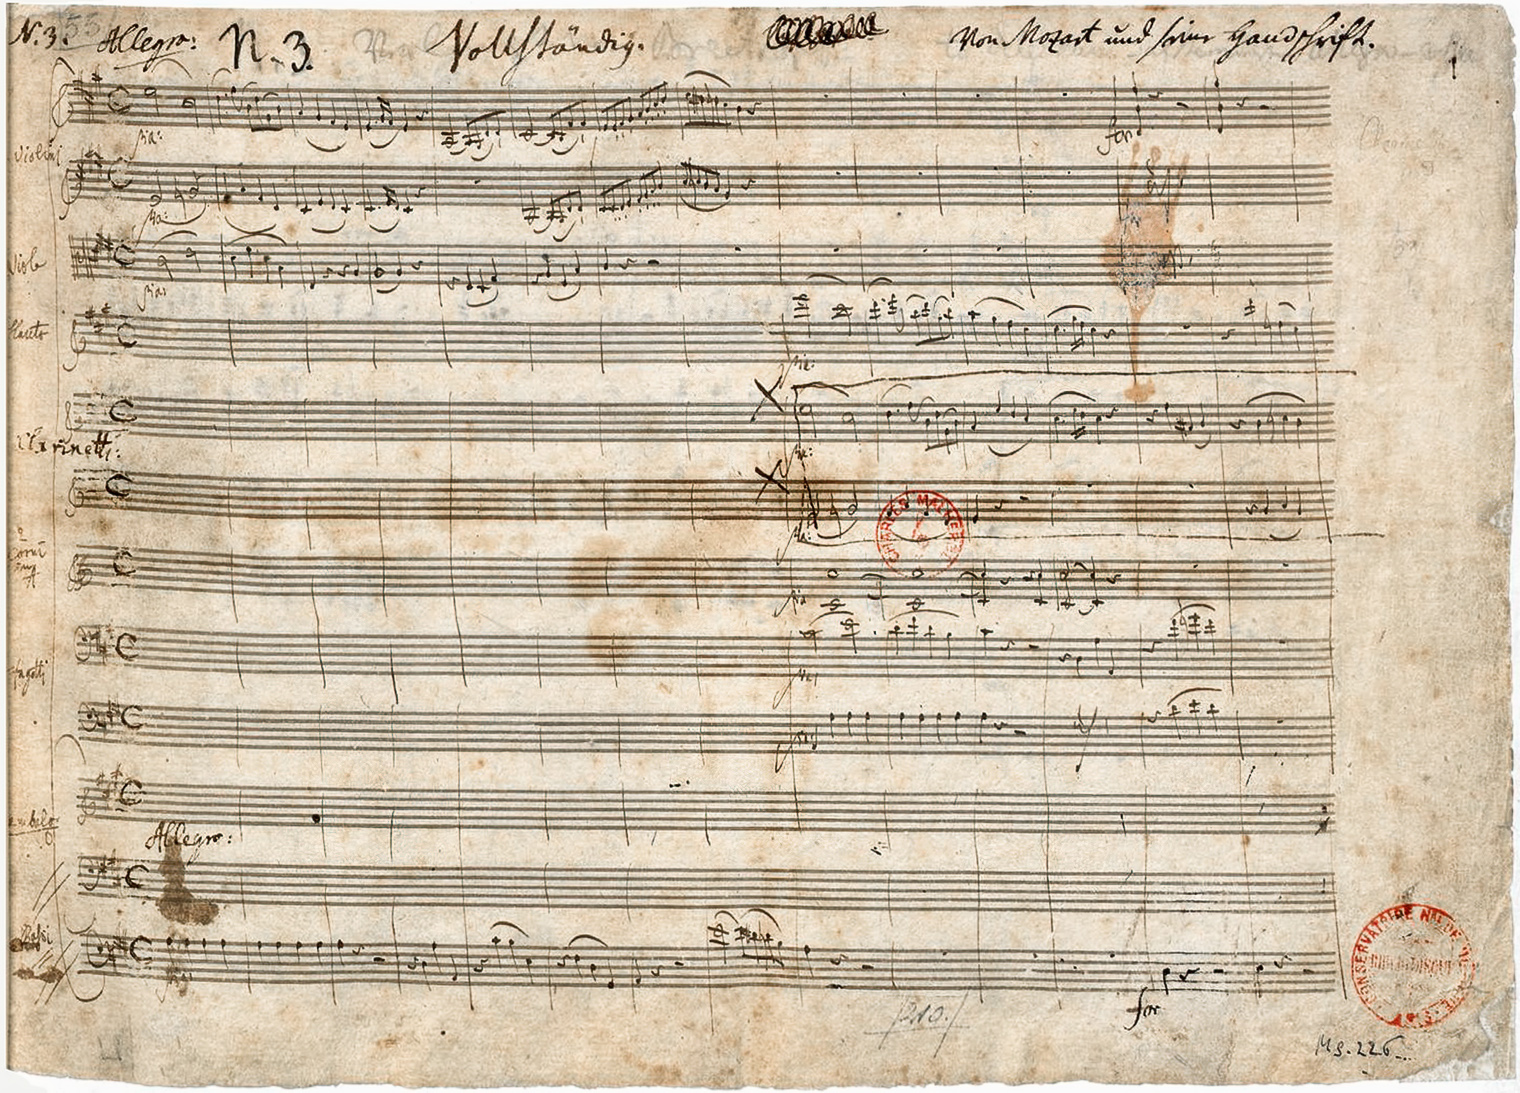 Piano Concerto No. 23 | Autograph score | Bibliothèque nationale de France